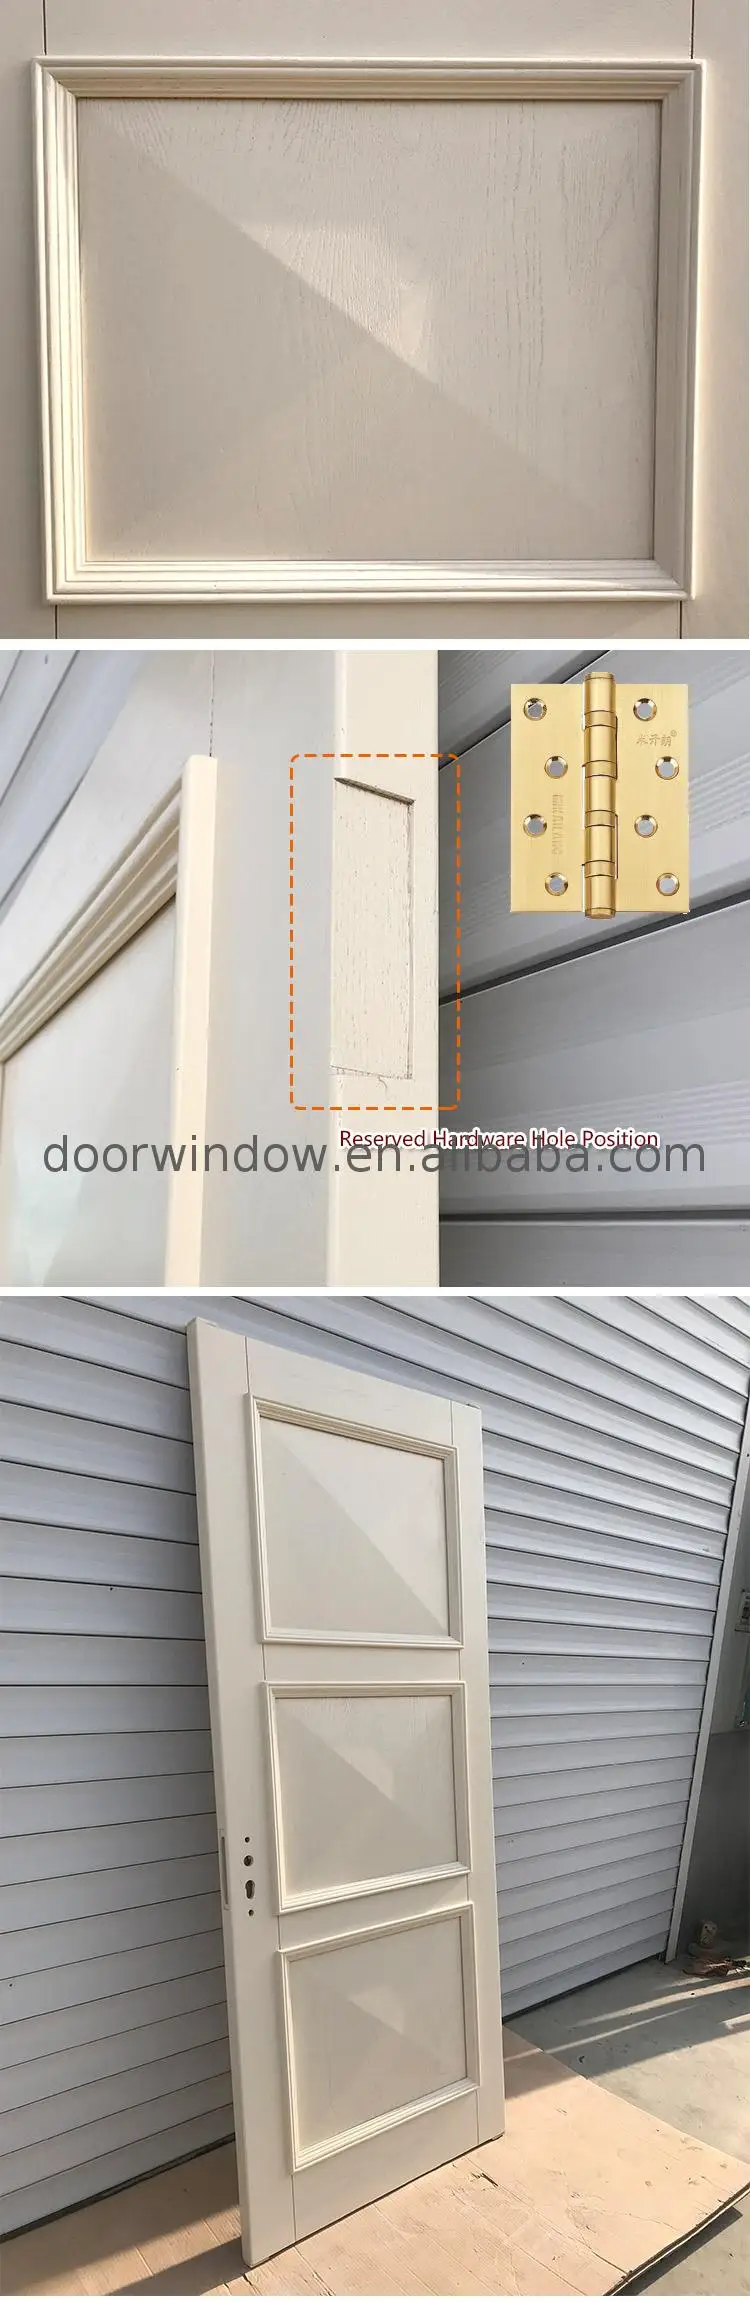 Wooden doors for home design catalogue door slats